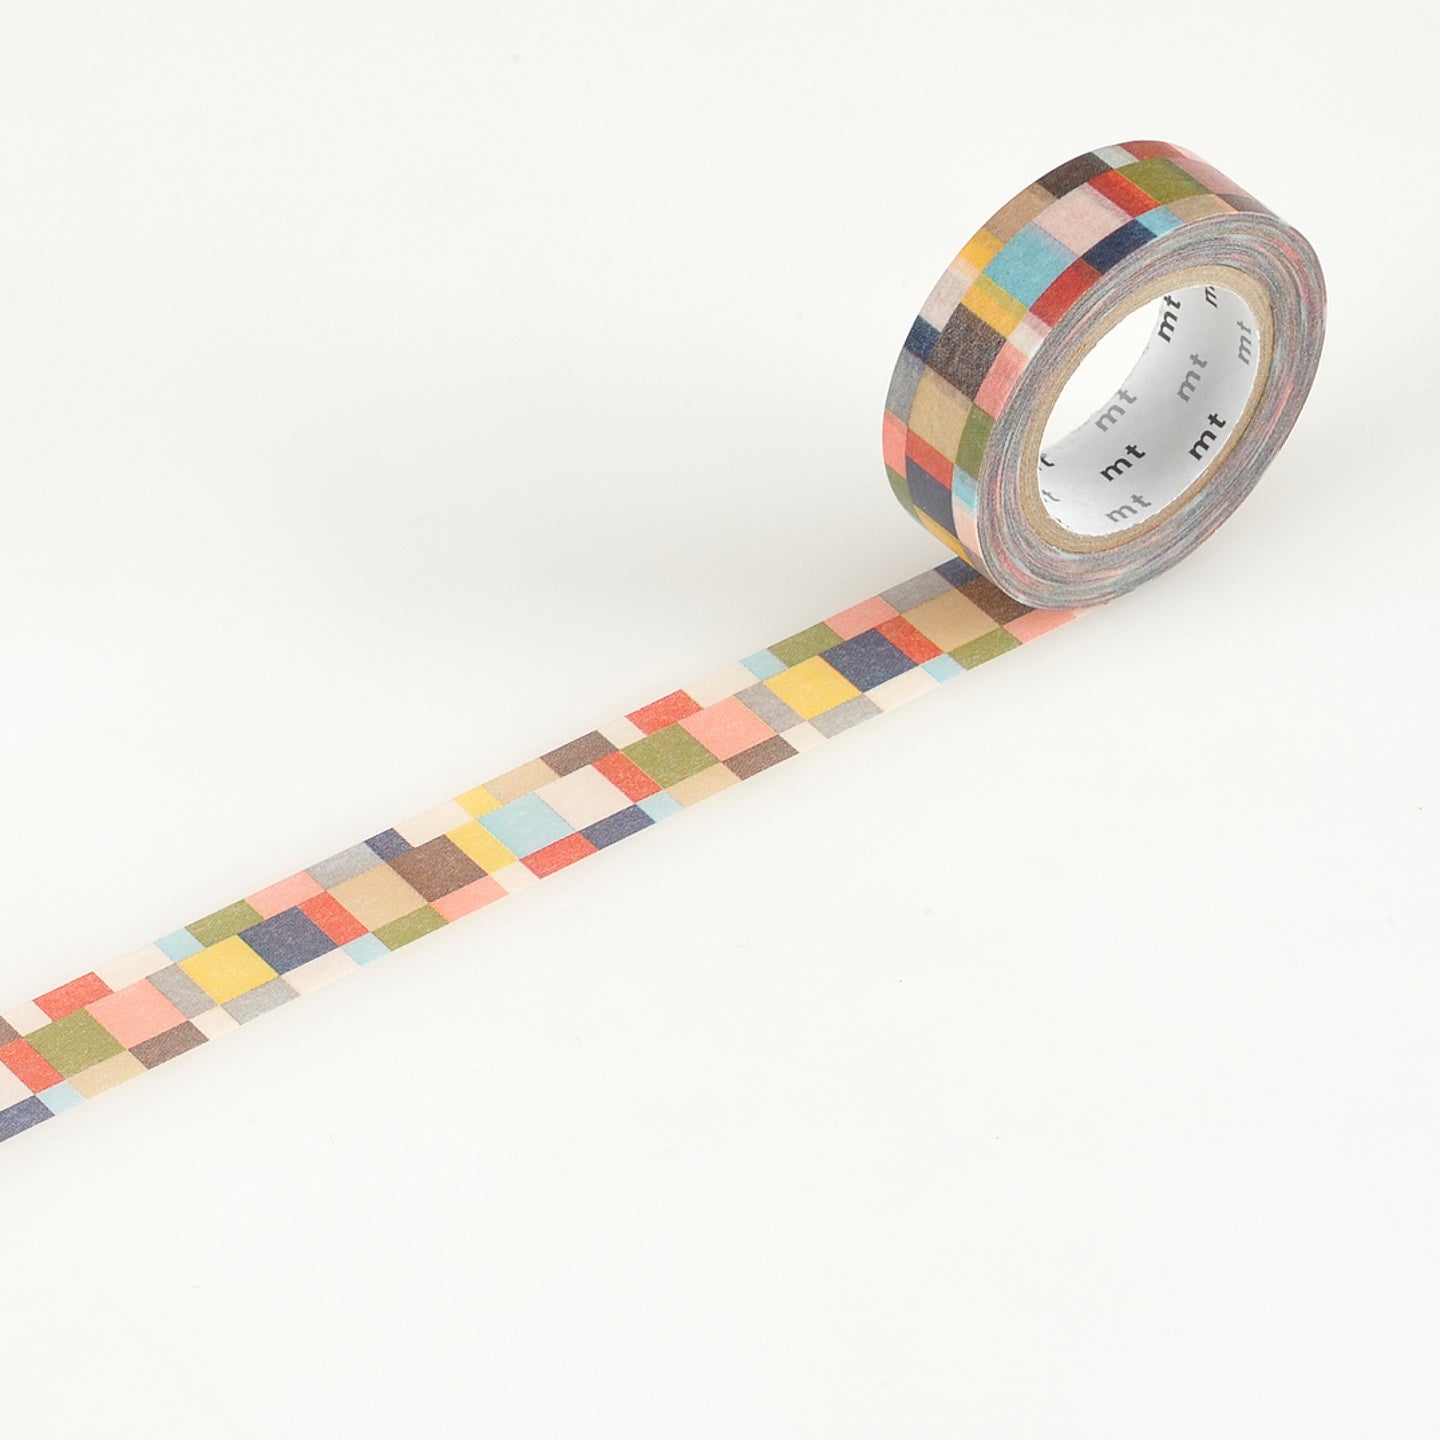 Papierklebeband aus Japan mit Muster aus unterschiedlich großen Rechtecken in Vintage Farbenmt masking tape japanisches washi tape Reispapier rocket Mosaik mosaic grayish